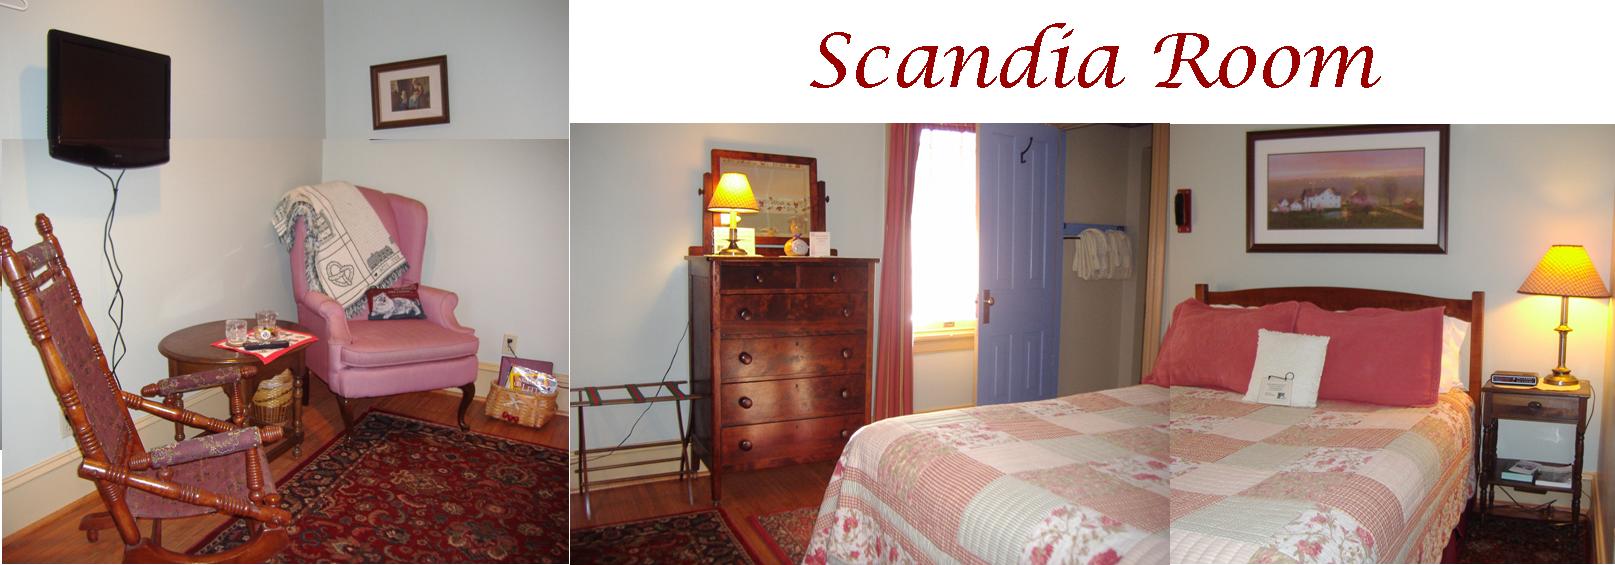 The Scandia Room